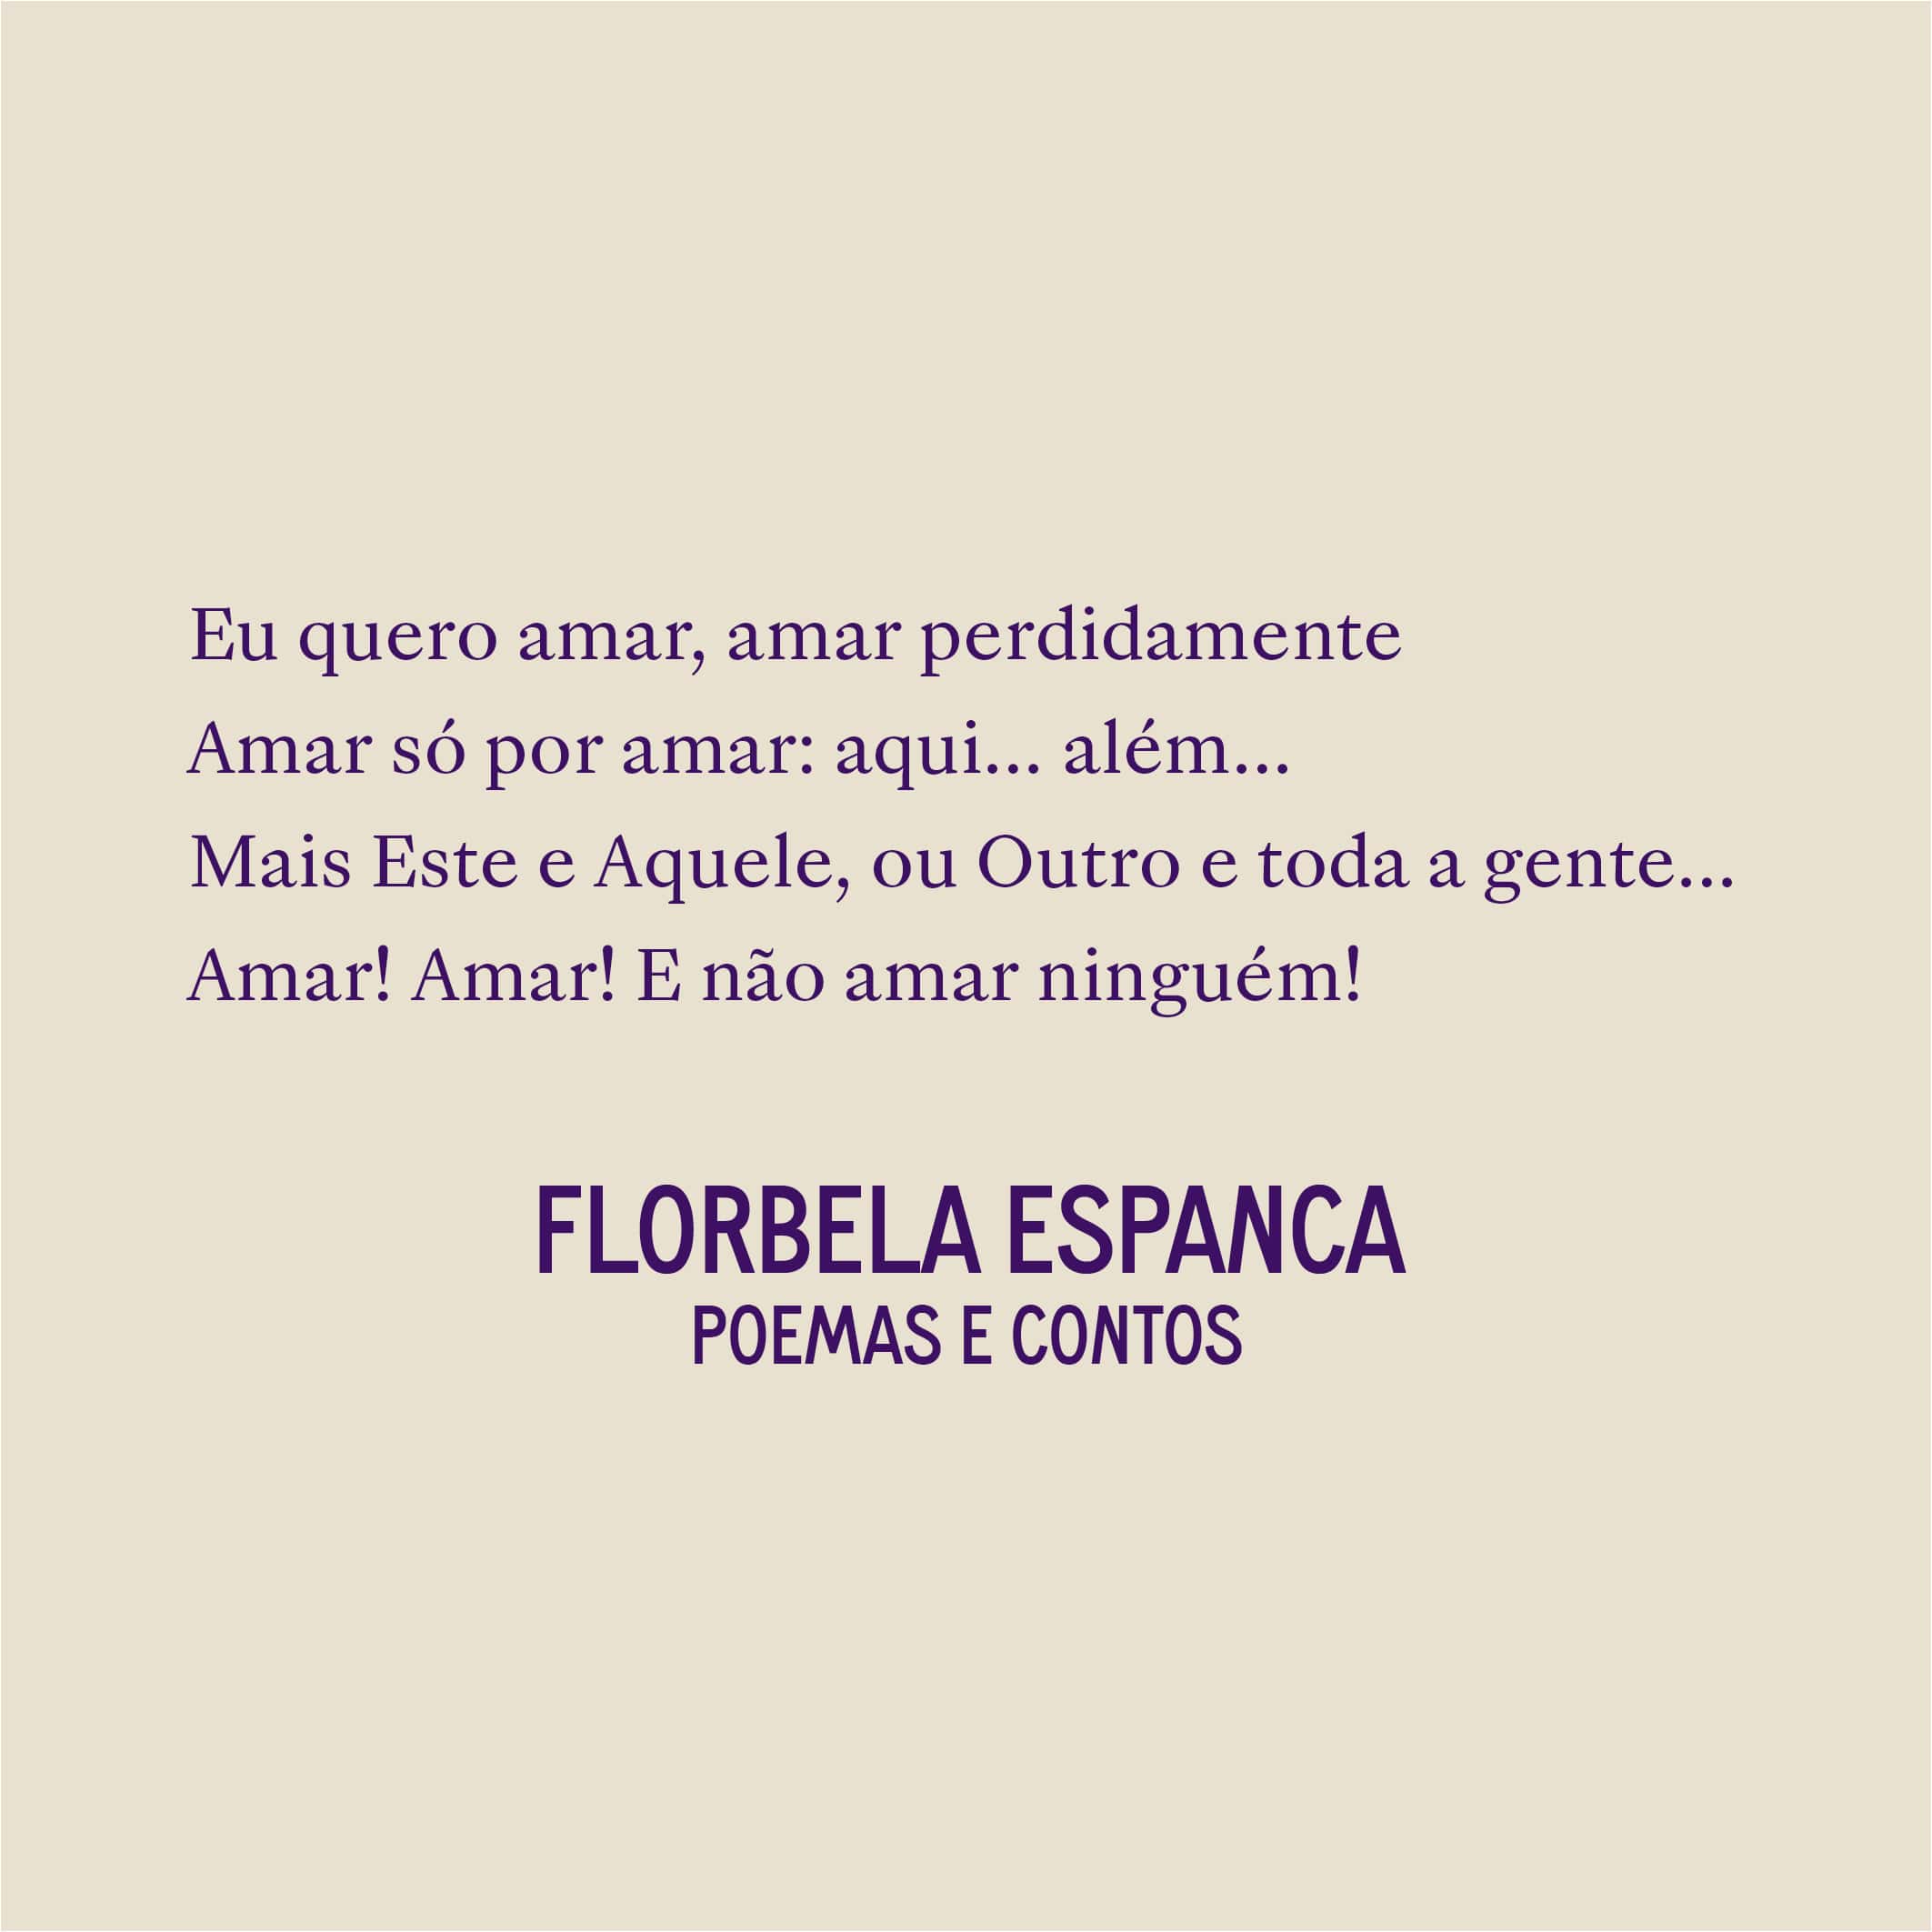 Florbela Espanca publicada em coletânea inédita | Lançamentos | Revista Ambrosia